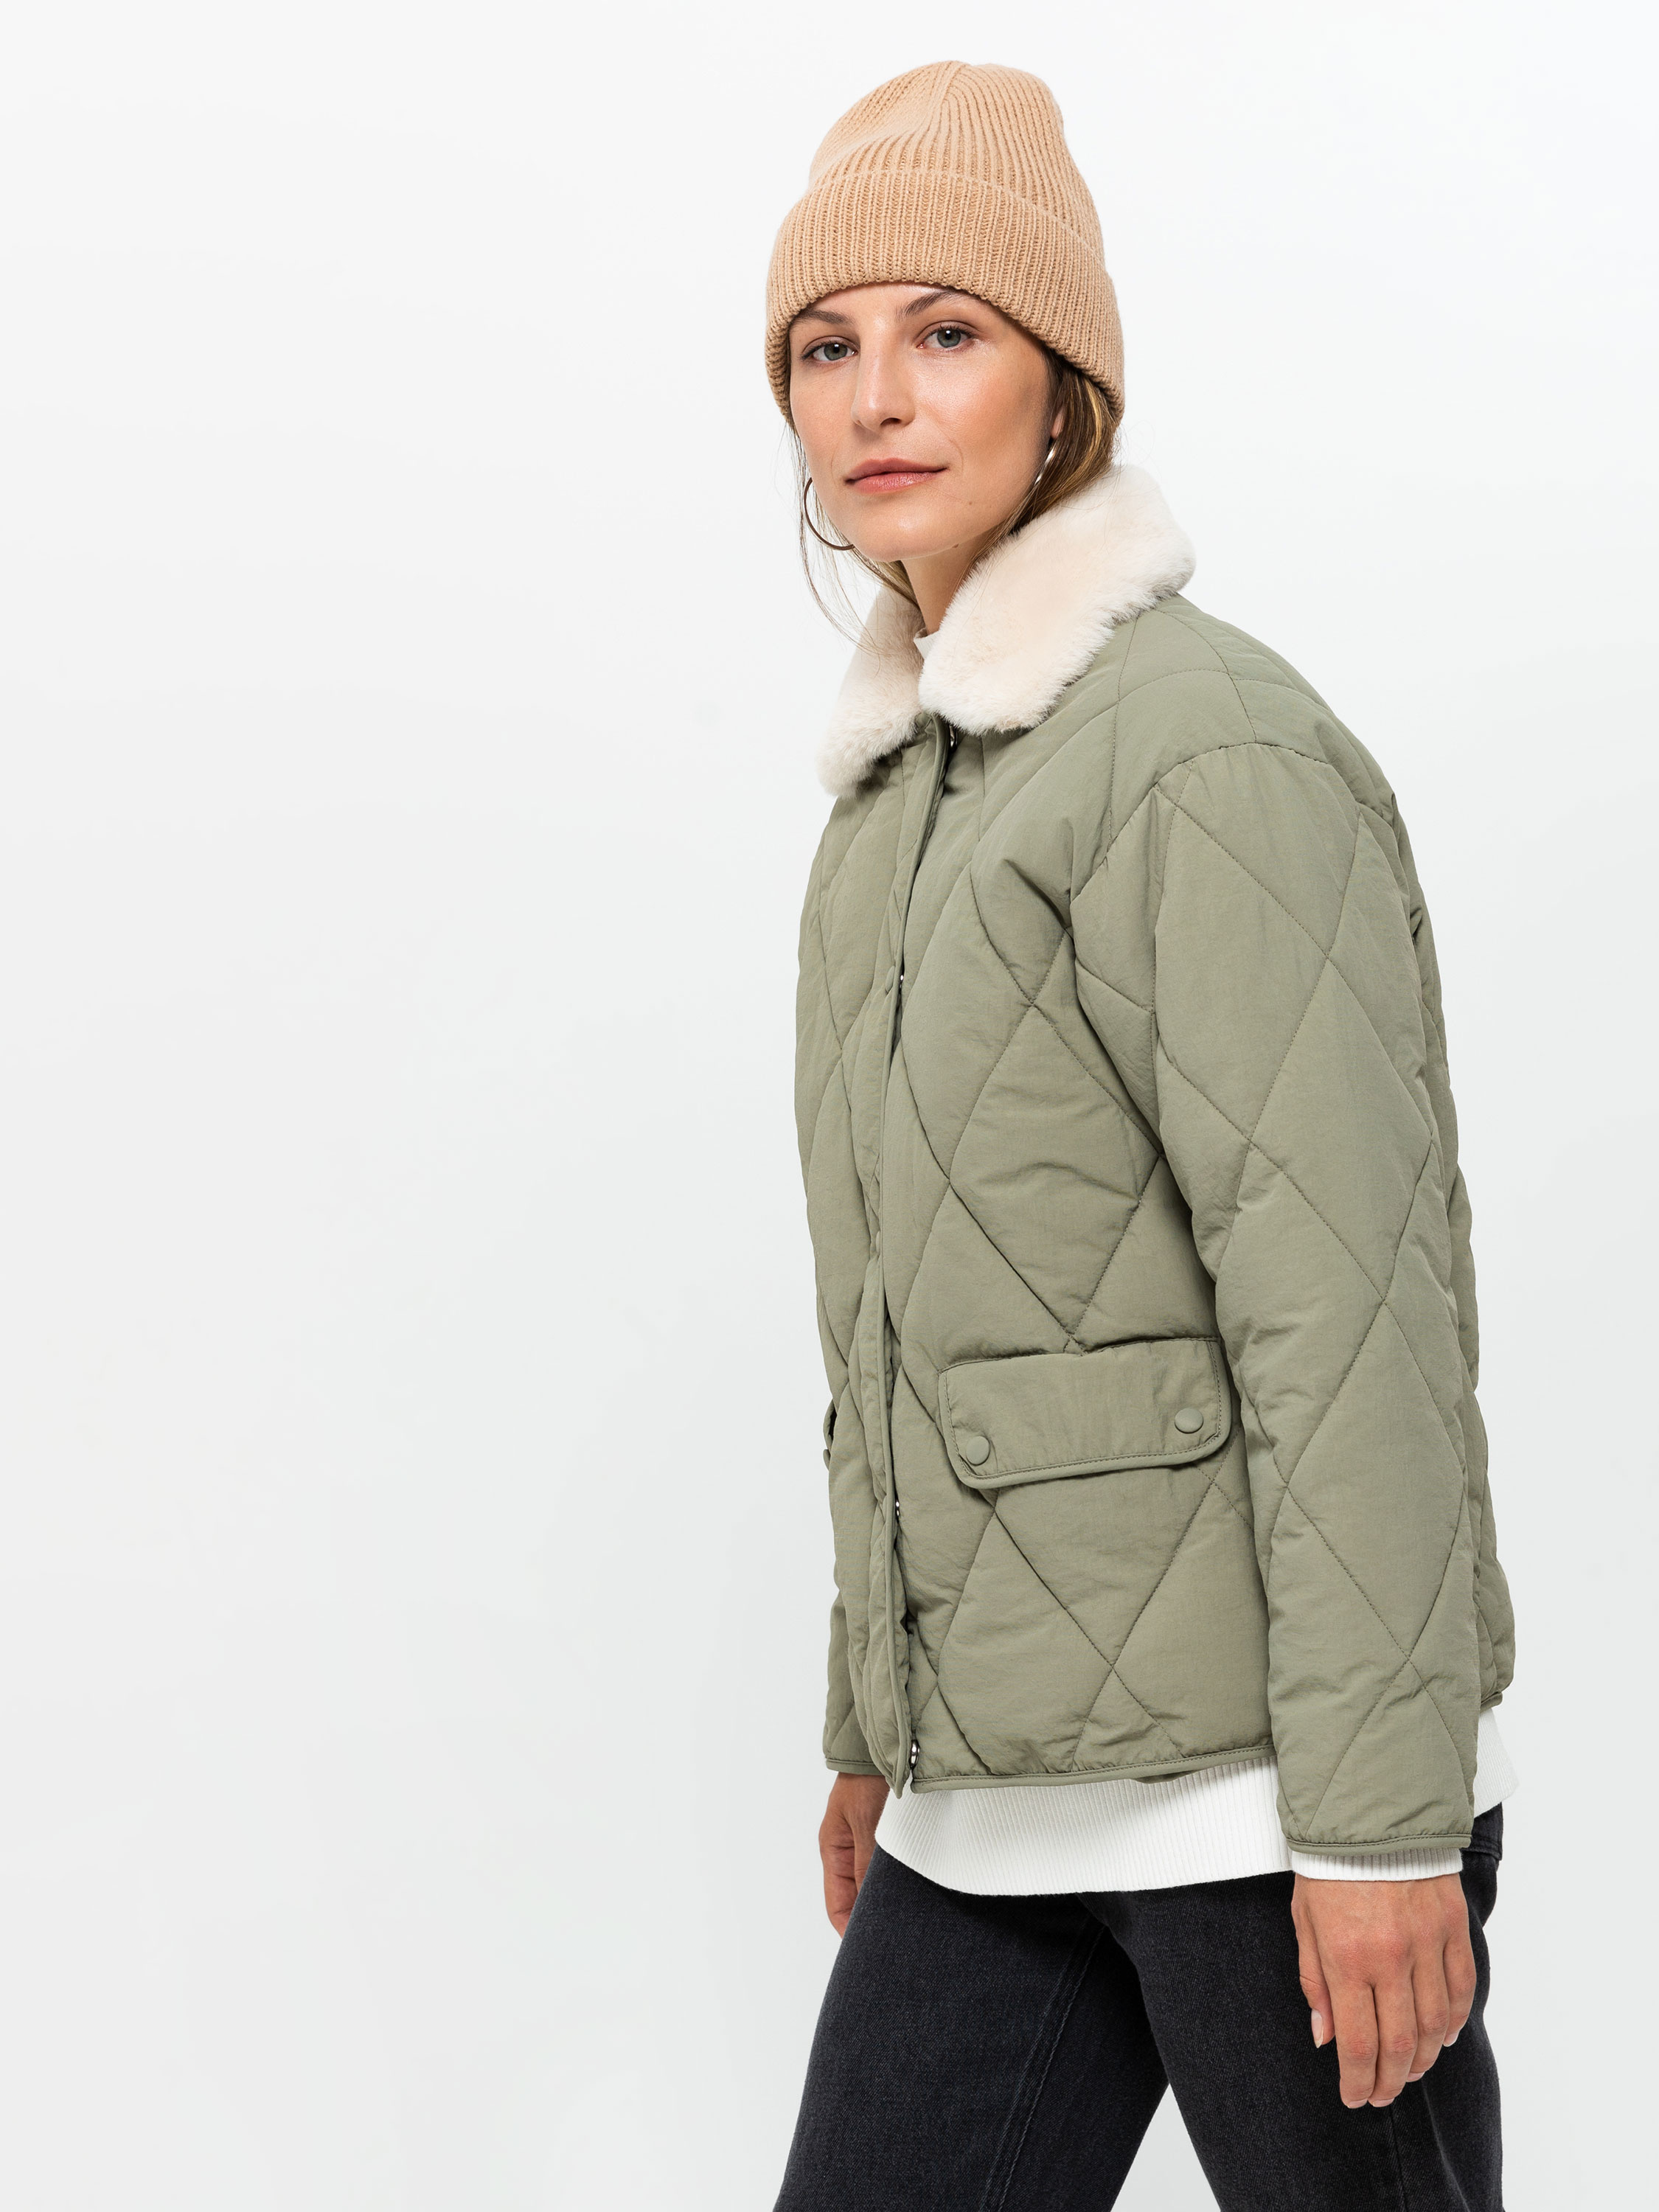 Купить демисезонные куртки на синтепоне женские в интернет магазине kormstroytorg.ru